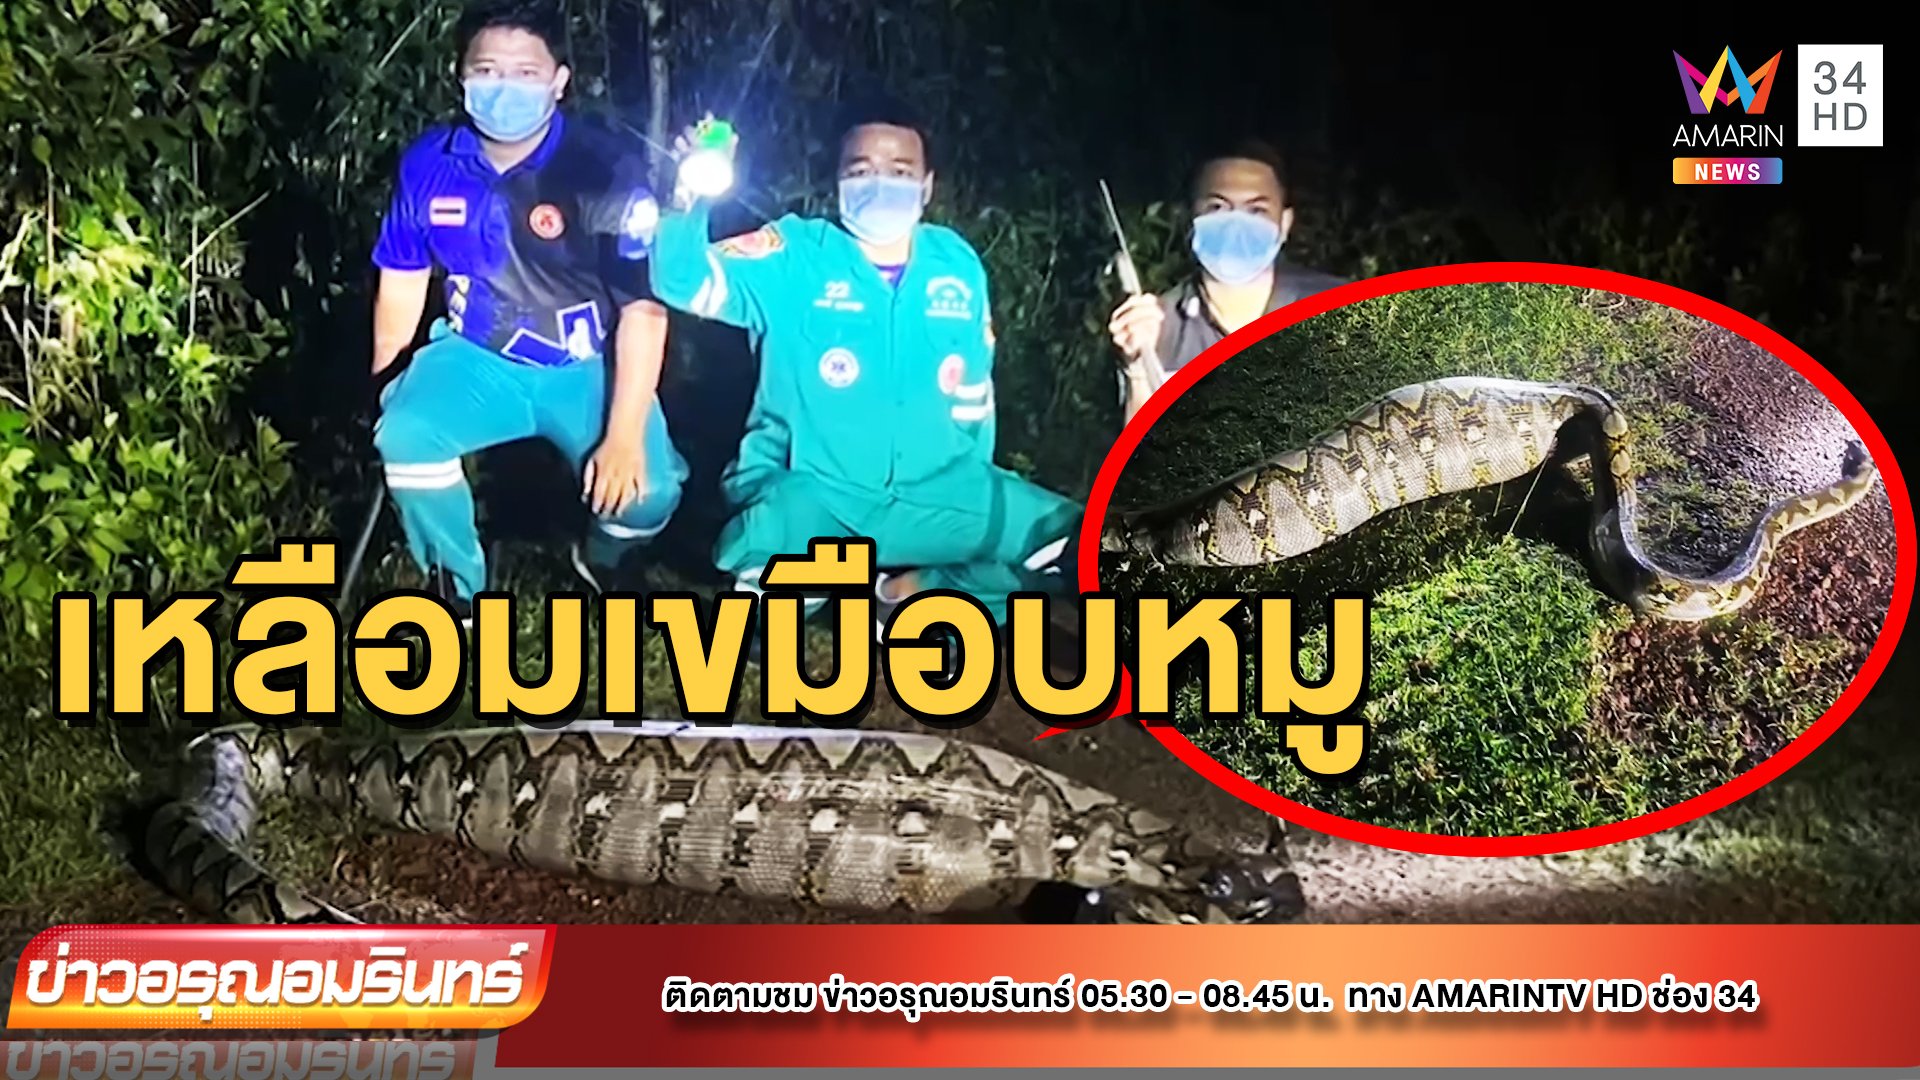 ผงะกลางดึก! งูเหลือมตัวเขื่อง นอนนิ่งหน้าบ้าน | ข่าวอรุณอมรินทร์ | 9 พ.ค. 65 | AMARIN TVHD34